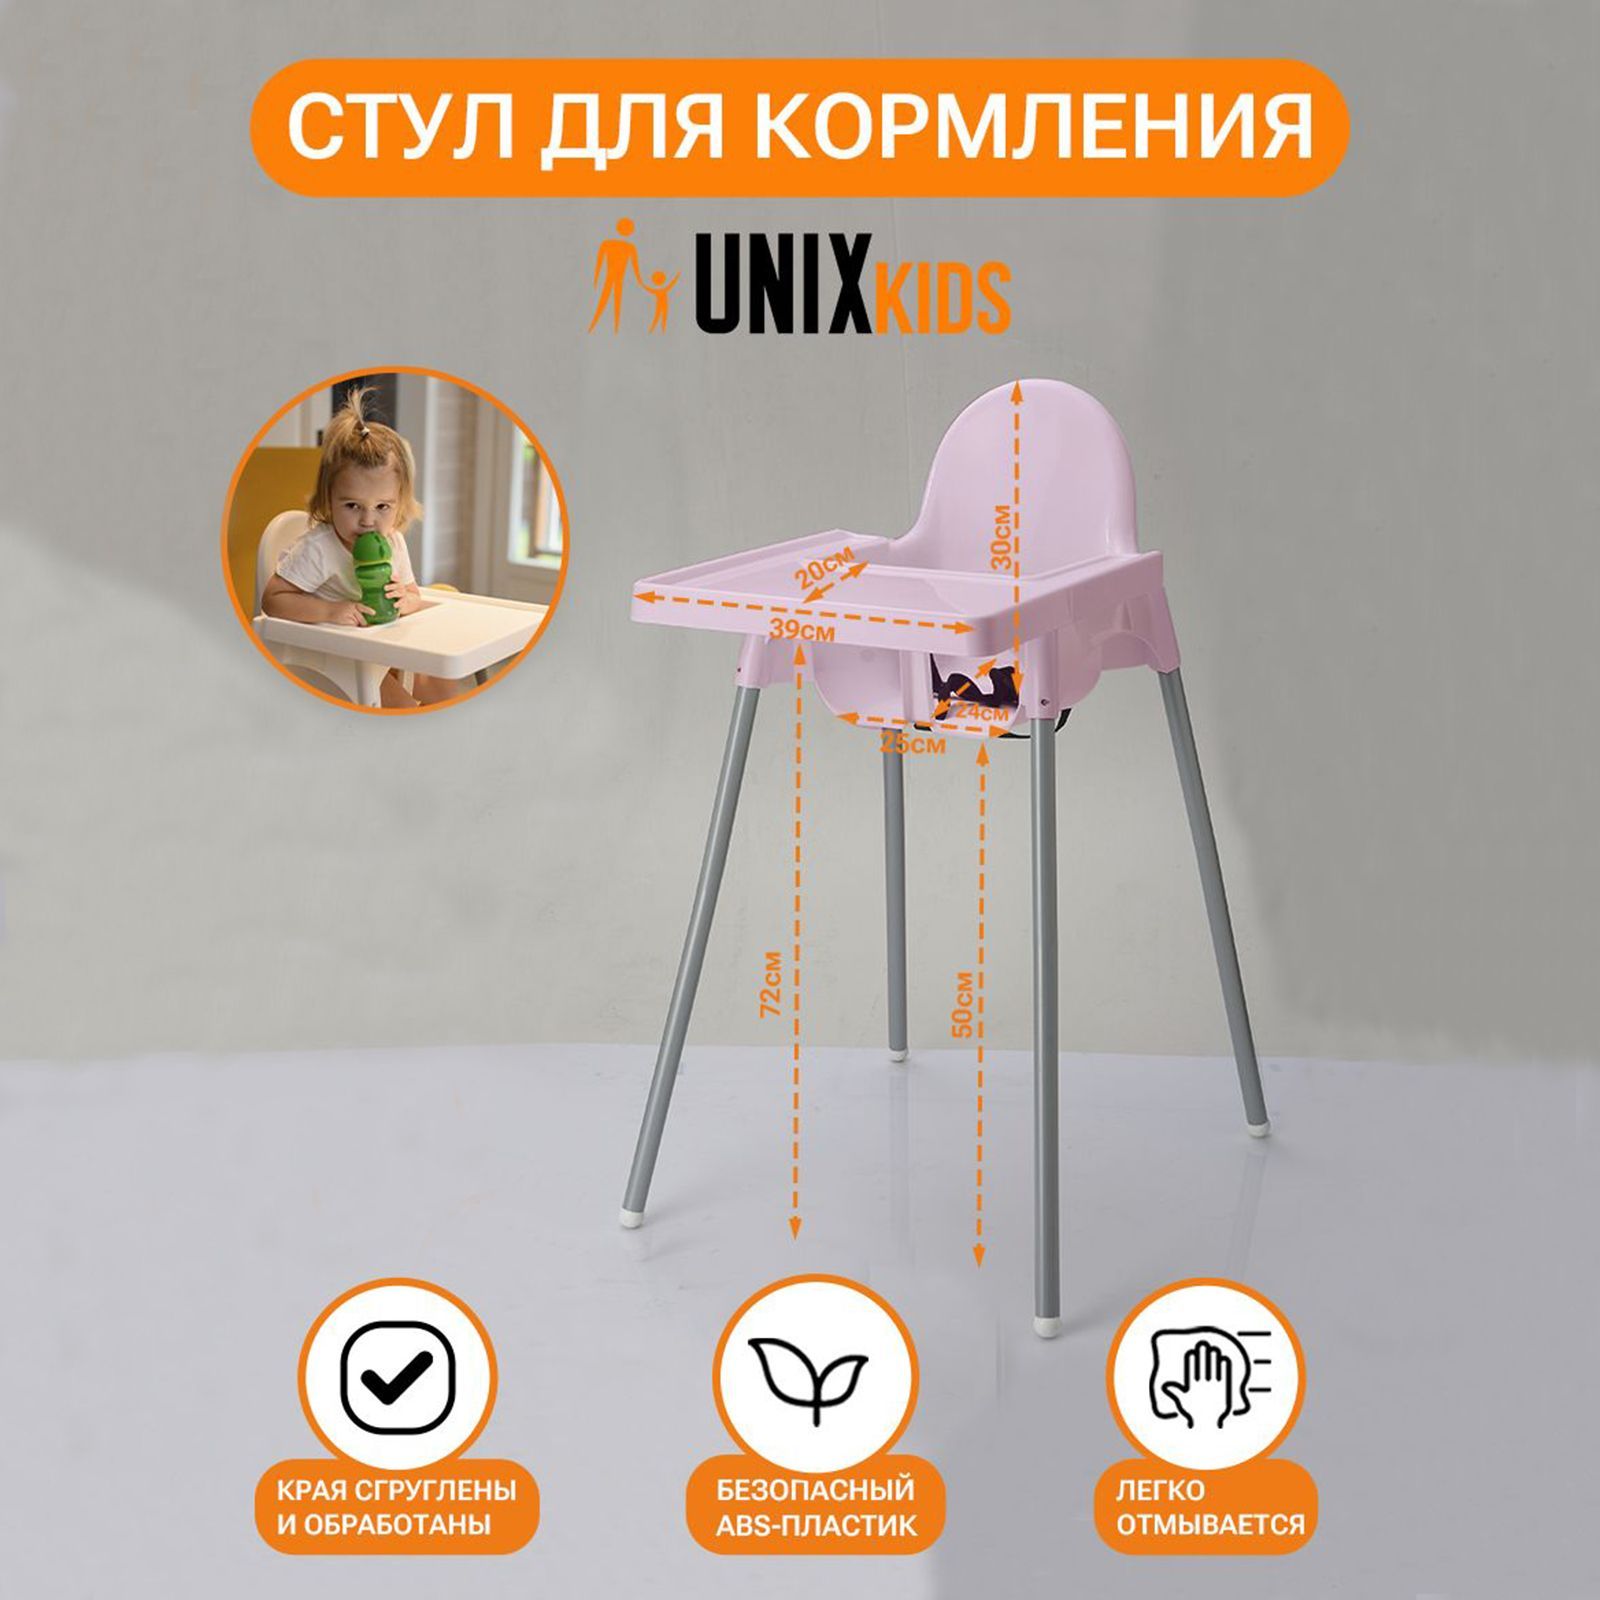 Стульчик для кормления UNIX Kids Fixed Rose - аналог ИКЕА, со столиком стульчик для кормления unix kids fixed white съемный столик